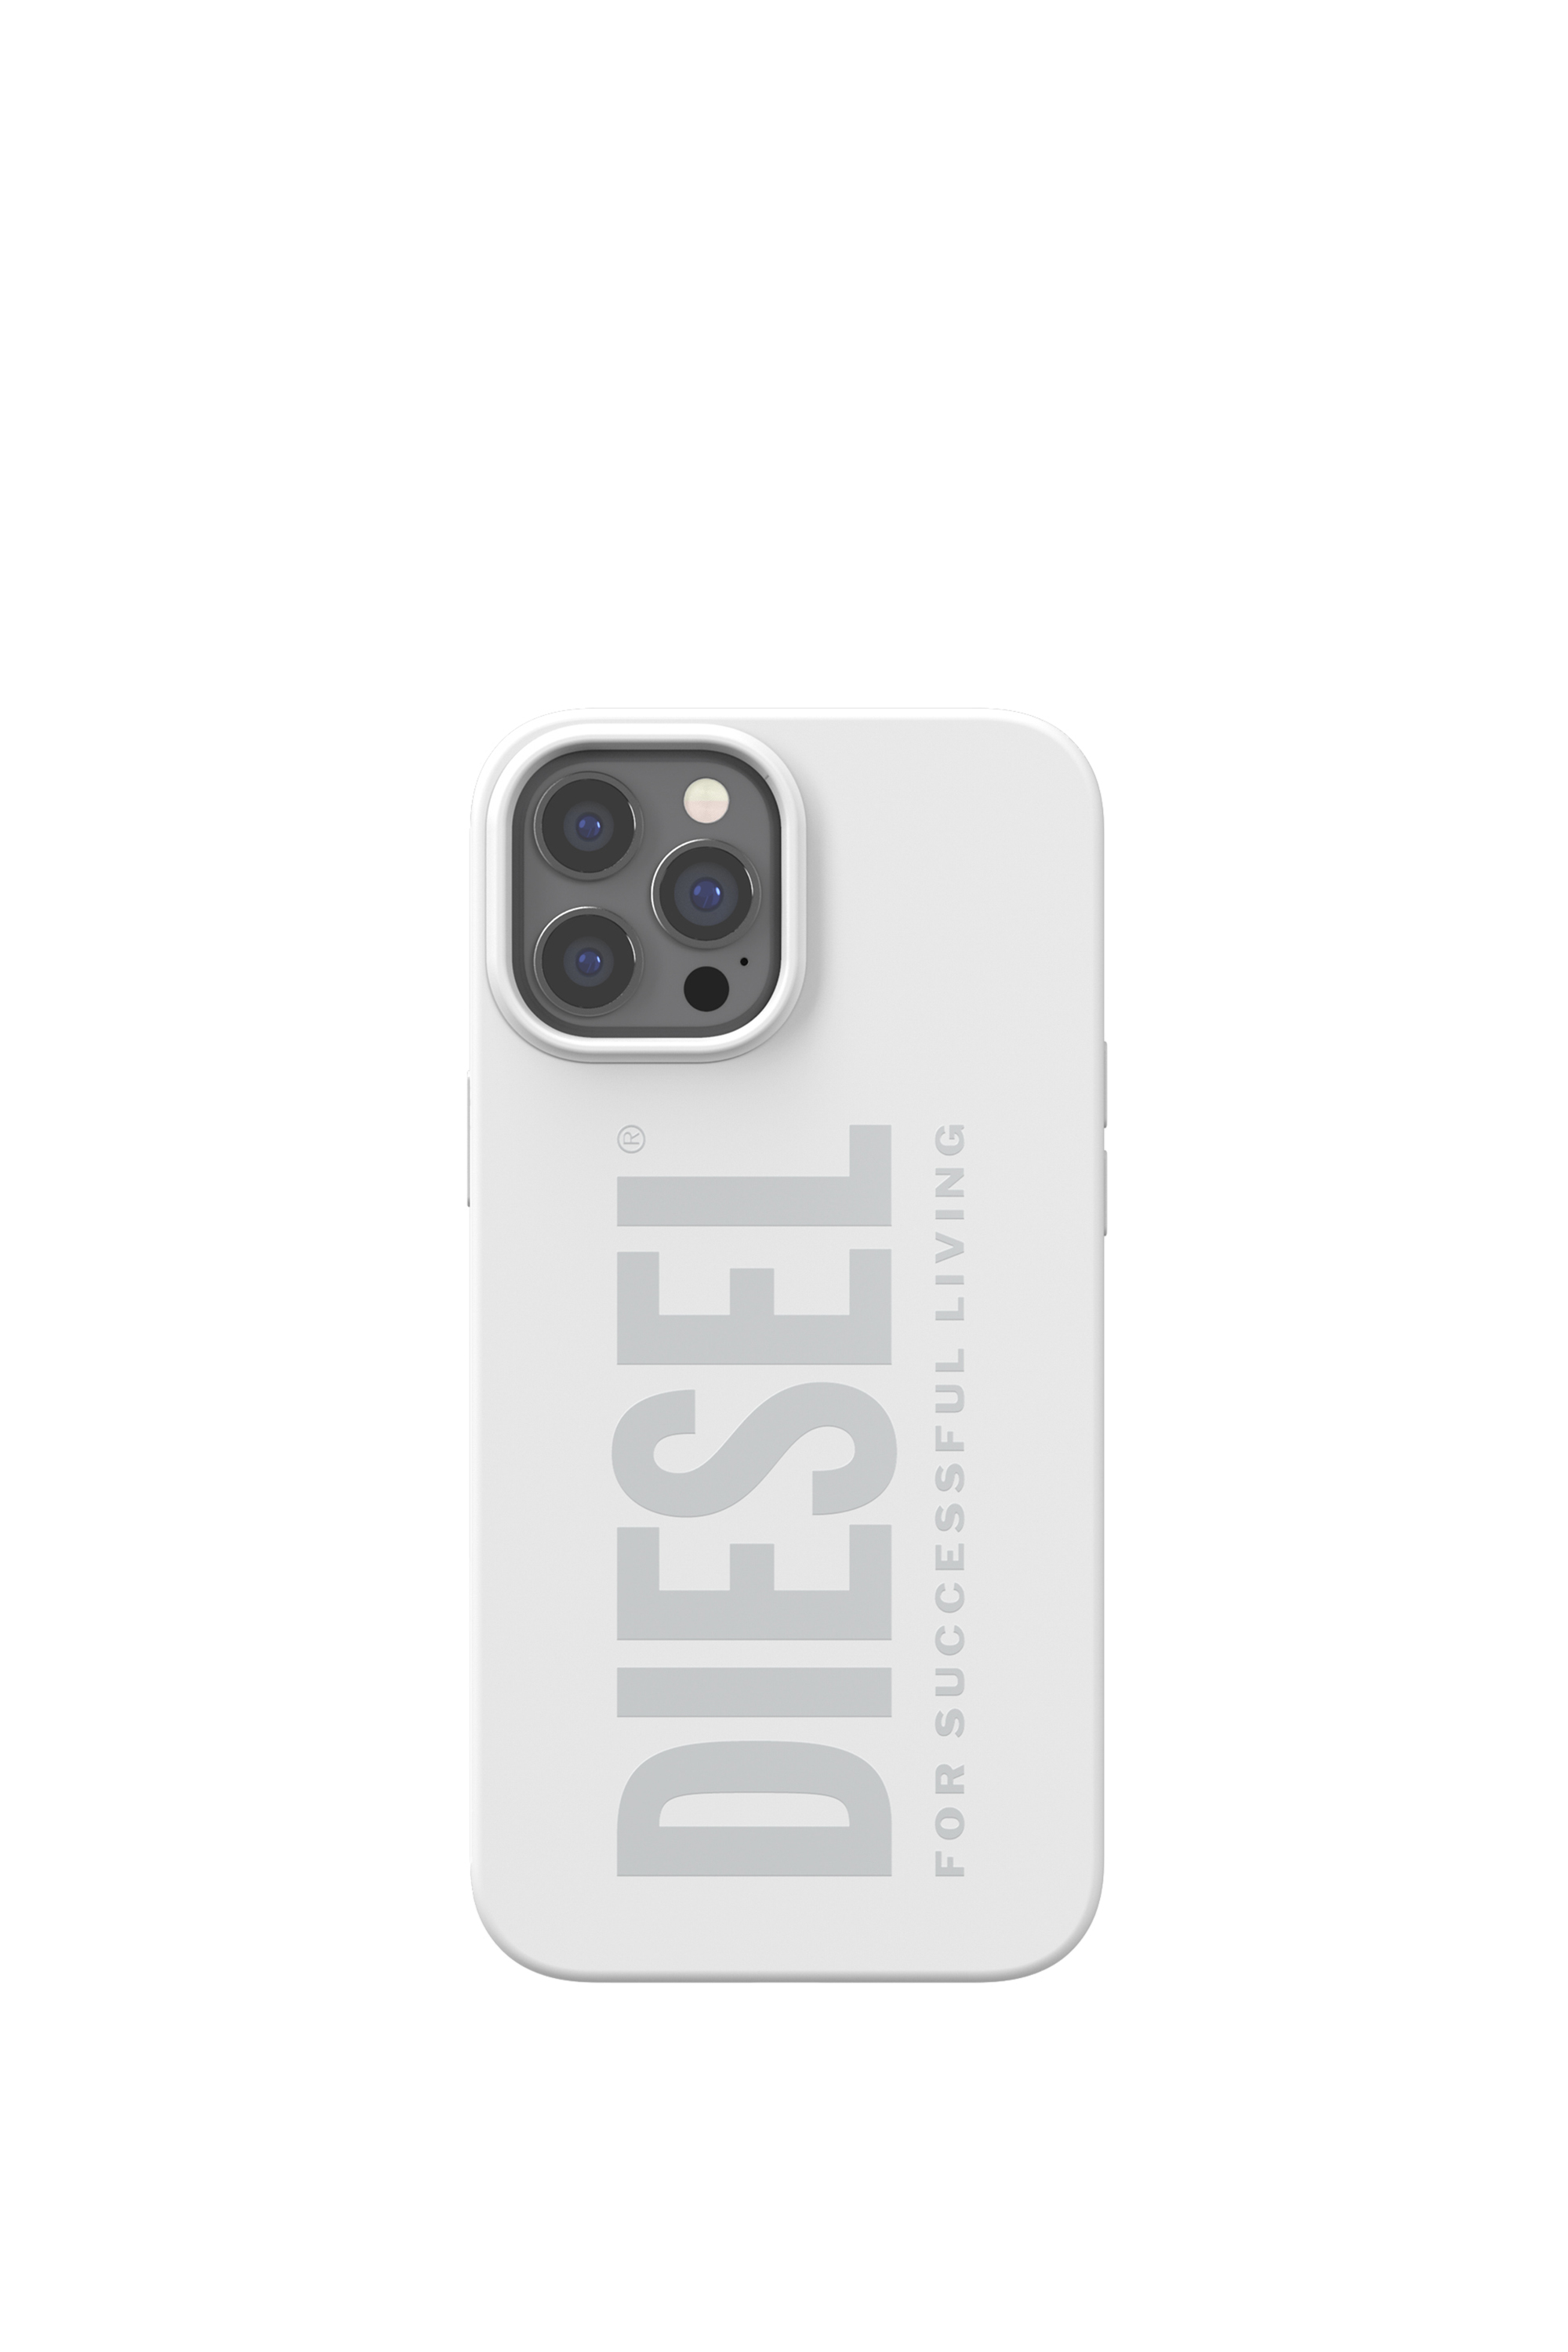 Diesel - 44283  STANDARD CASES, Blanco - Image 2